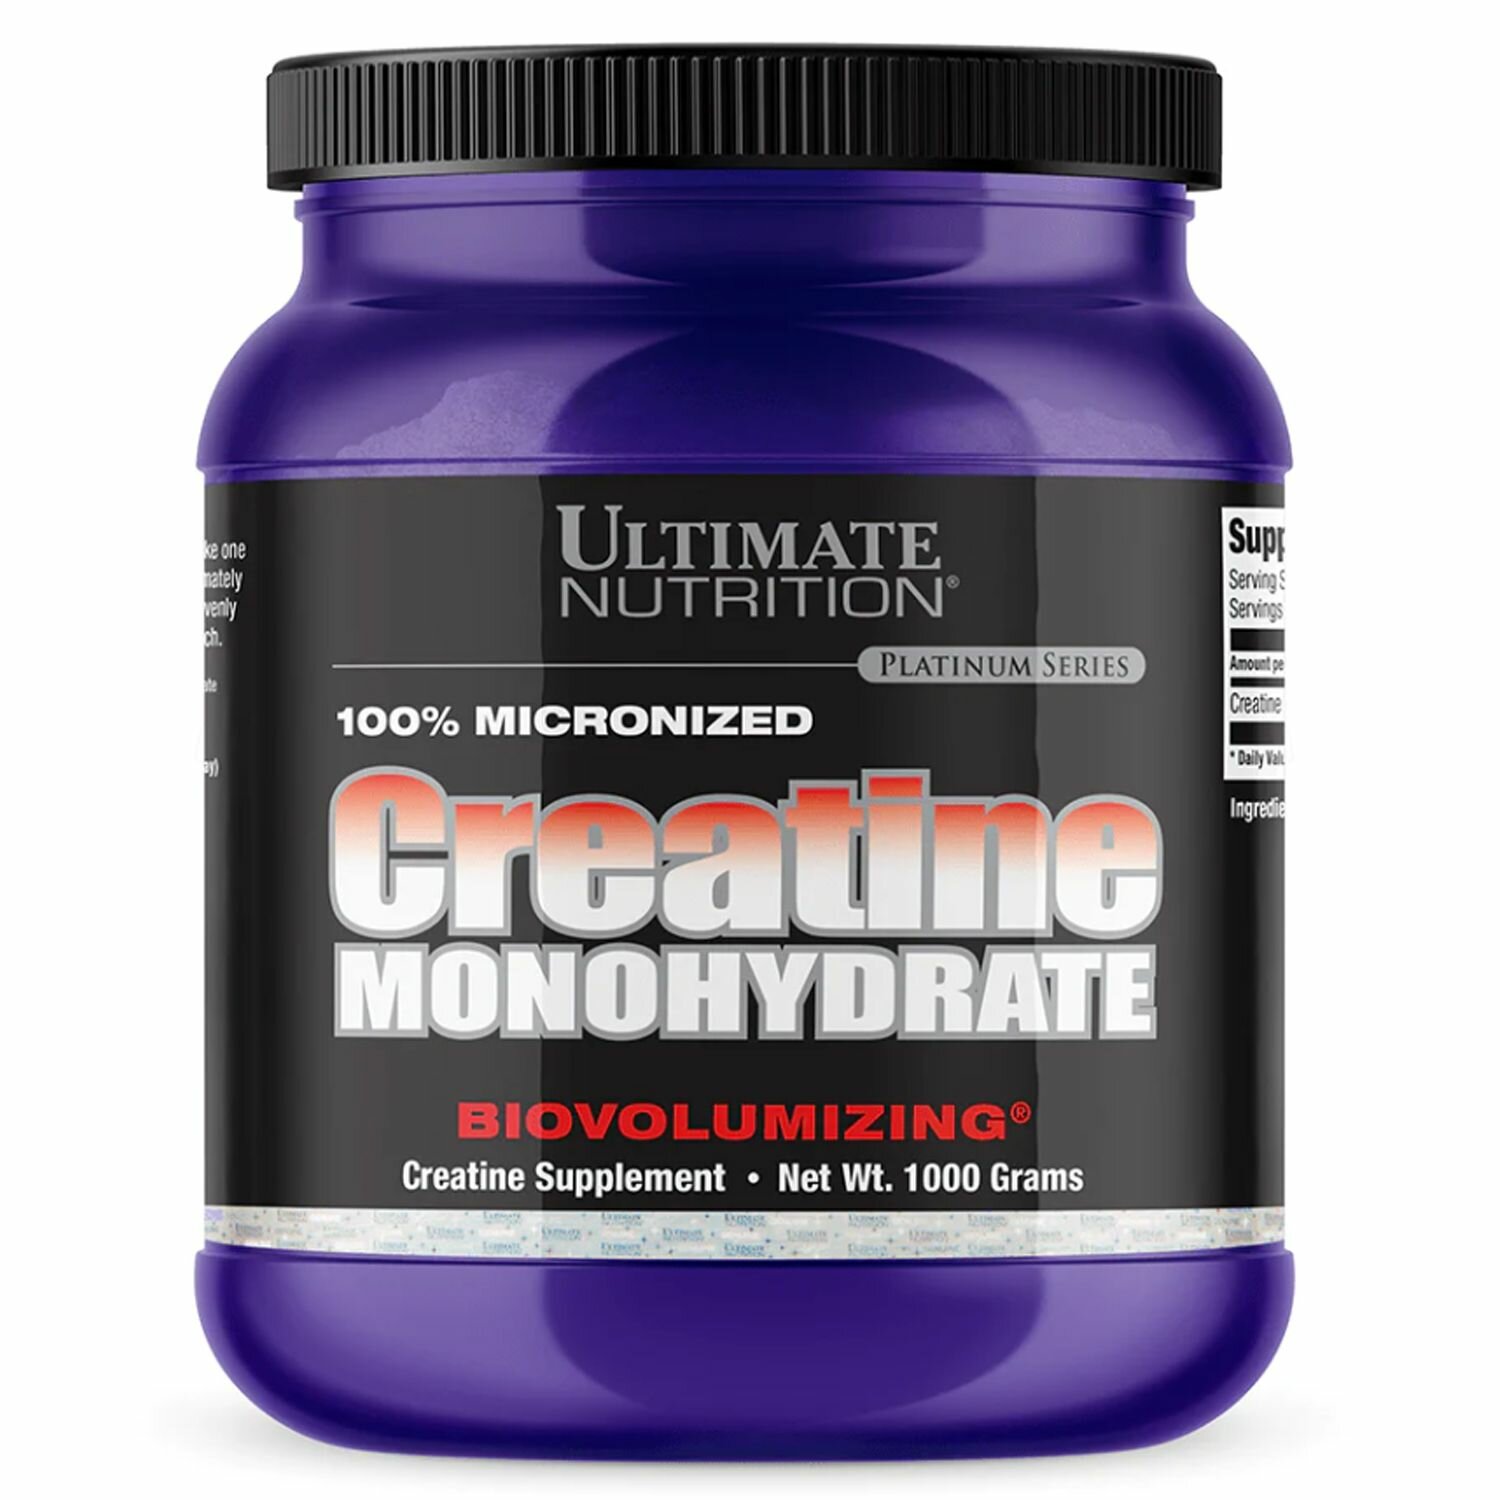 Креатин Моногидрат Ultimate Nutrition 100% Micronized Creatine Monohydrate 1000 гр.